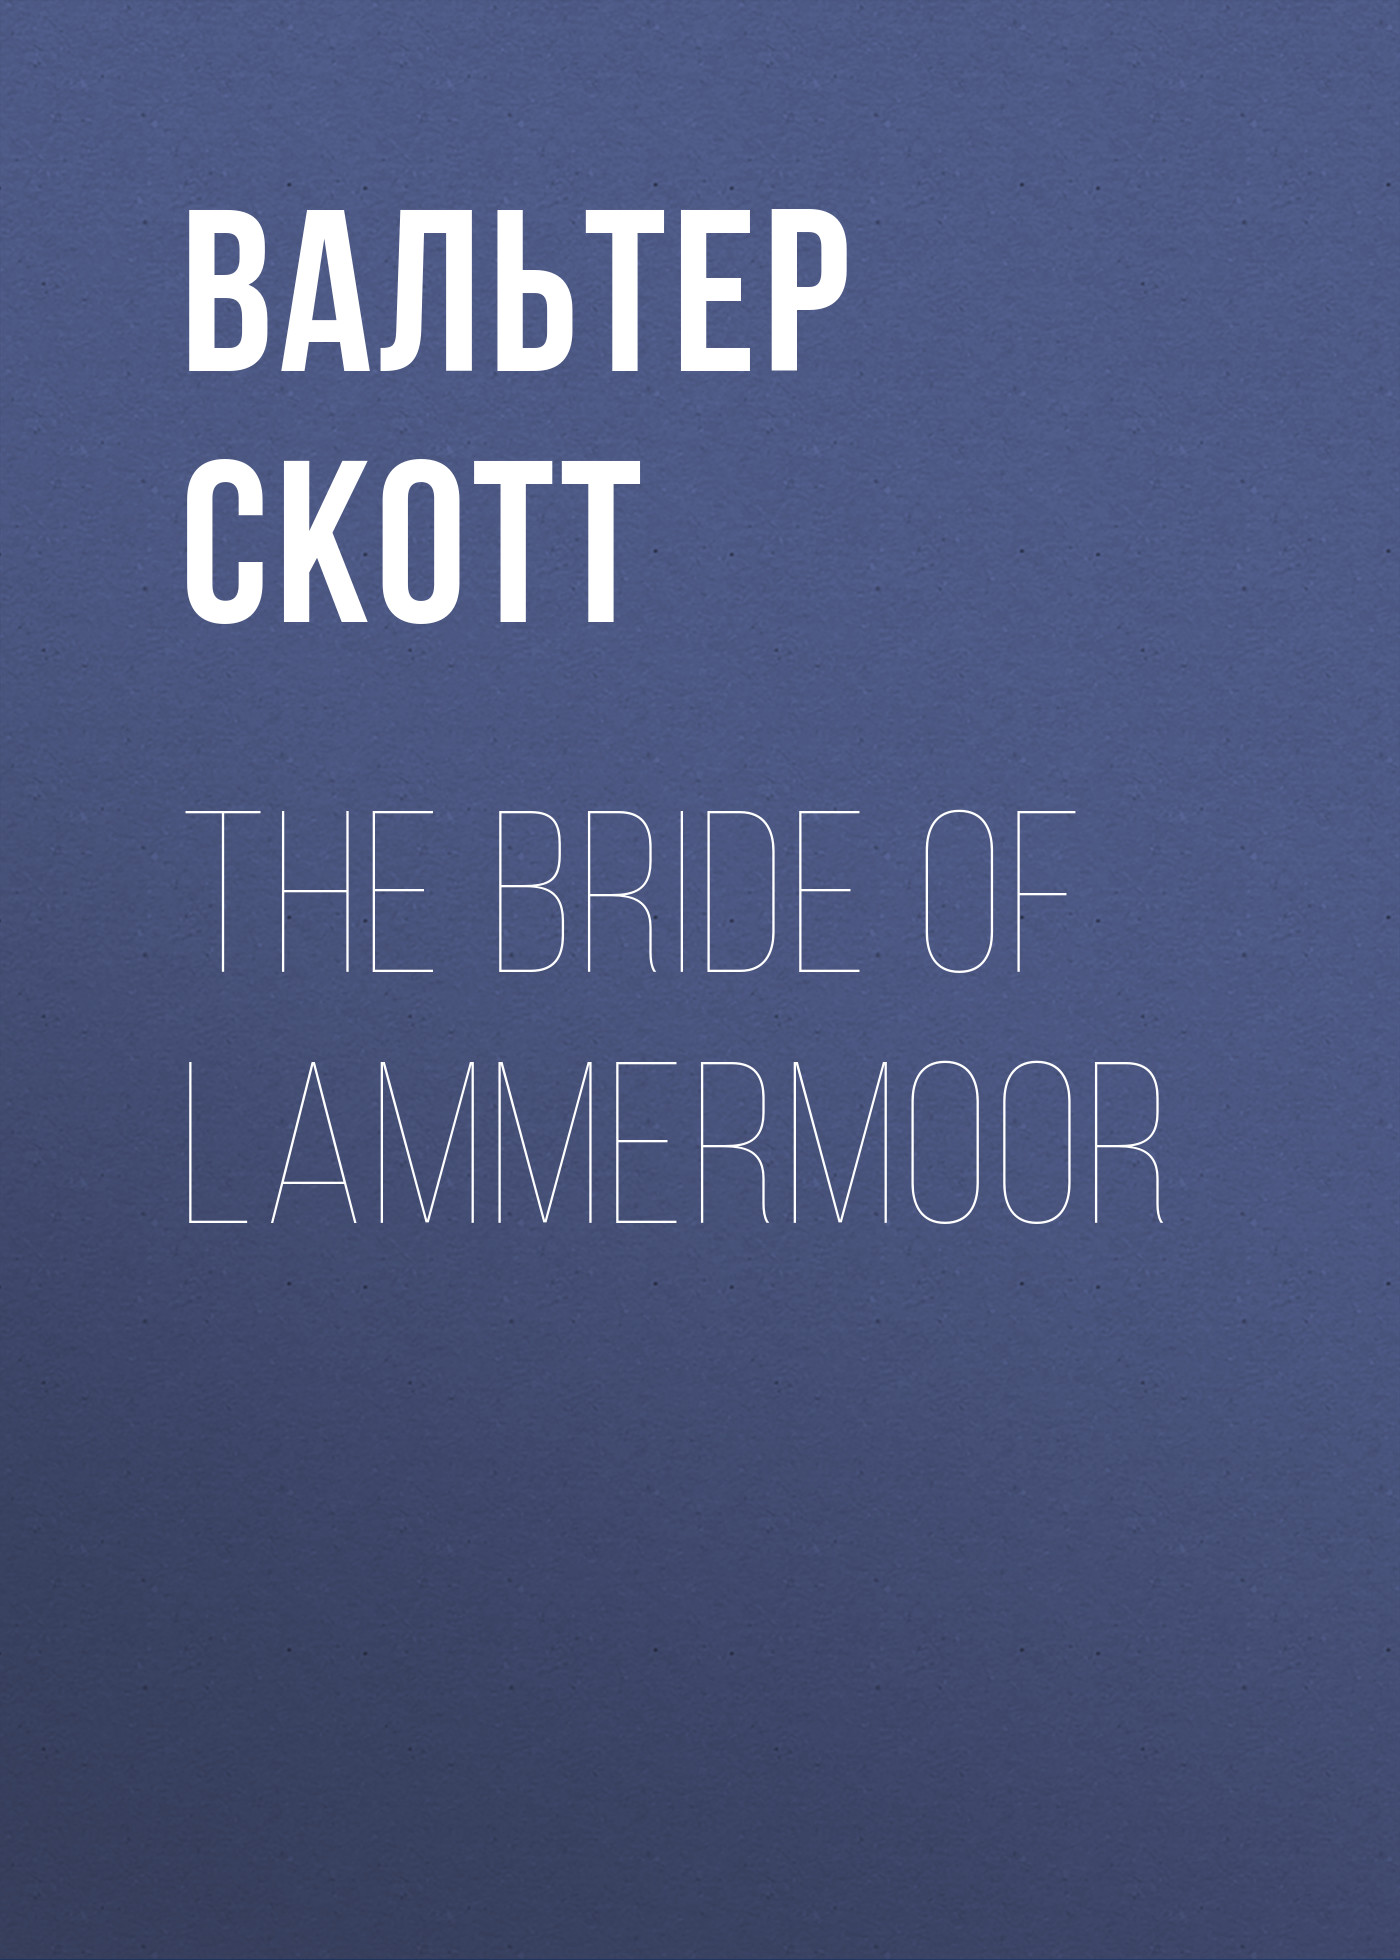 Книга The Bride of Lammermoor из серии , созданная Вальтер Скотт, может относится к жанру Философия, Литература 19 века, Зарубежная старинная литература, Зарубежная классика. Стоимость электронной книги The Bride of Lammermoor с идентификатором 25449380 составляет 0 руб.